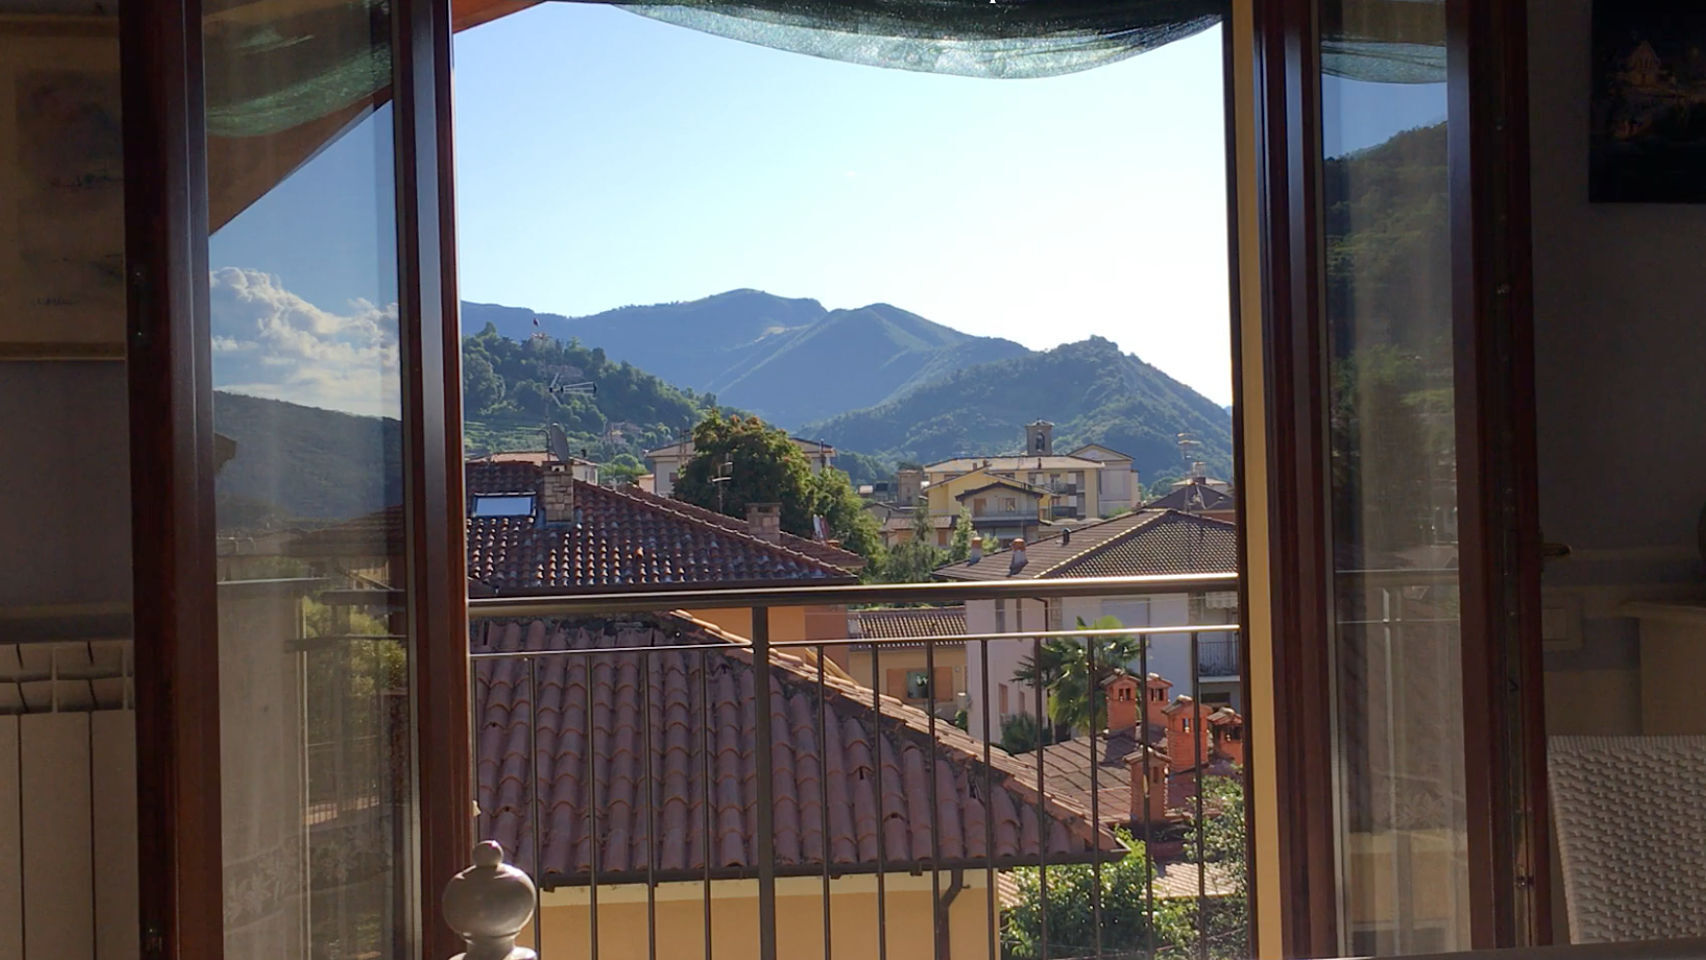 Vista desde una ventana en Italia.